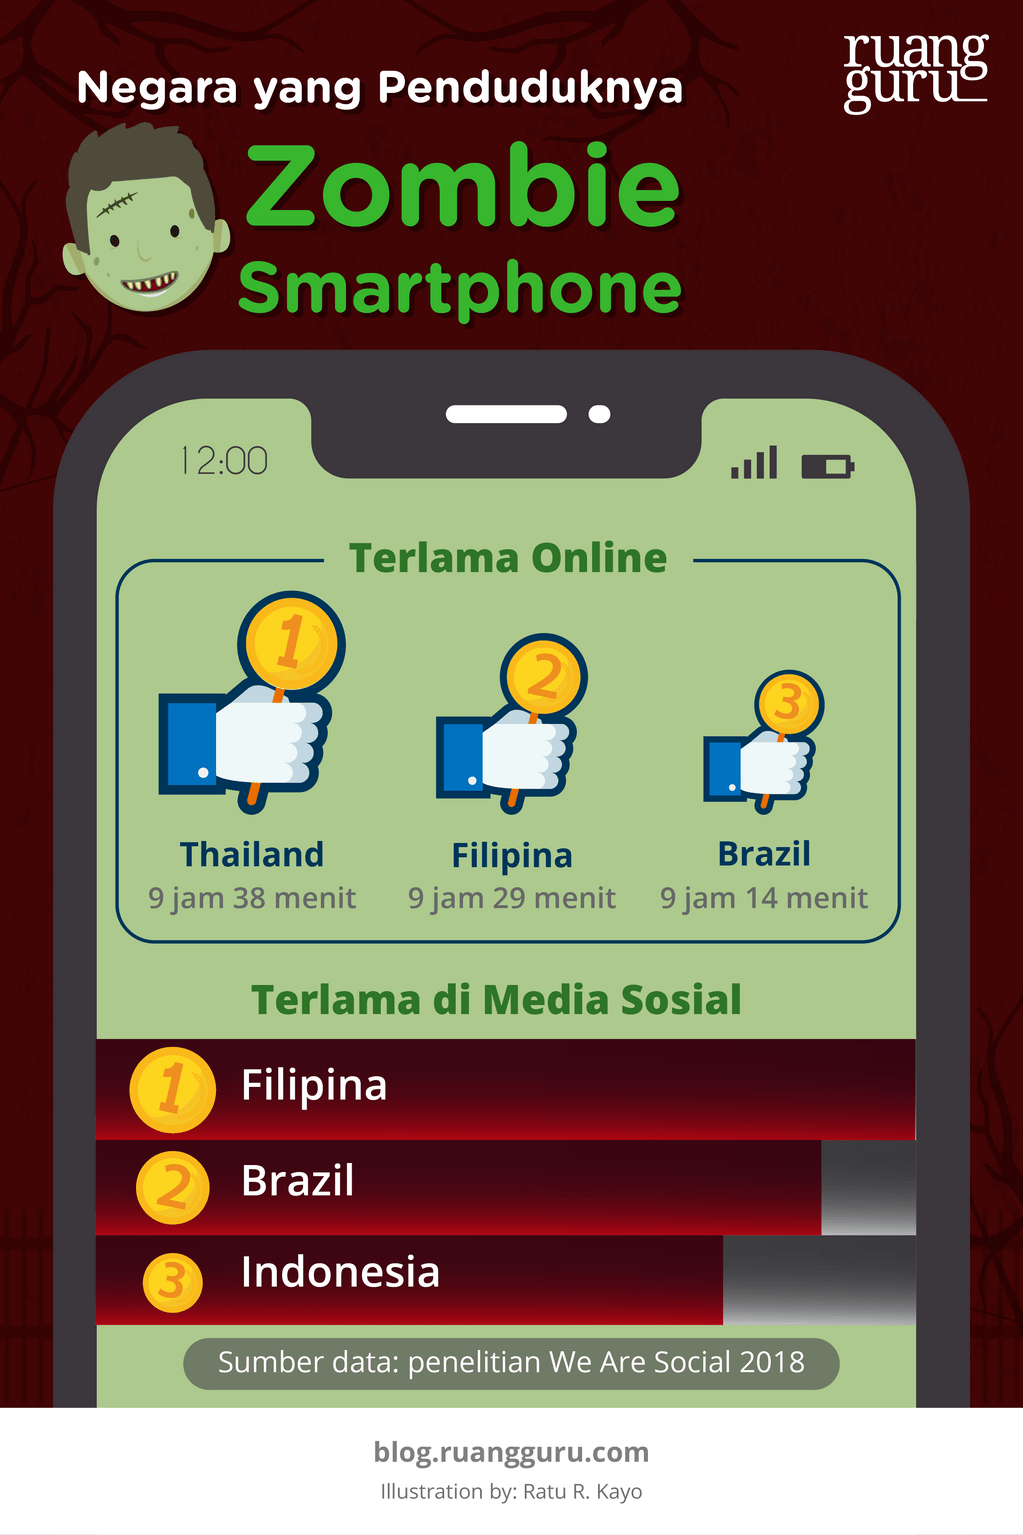 negara yang paling sering online